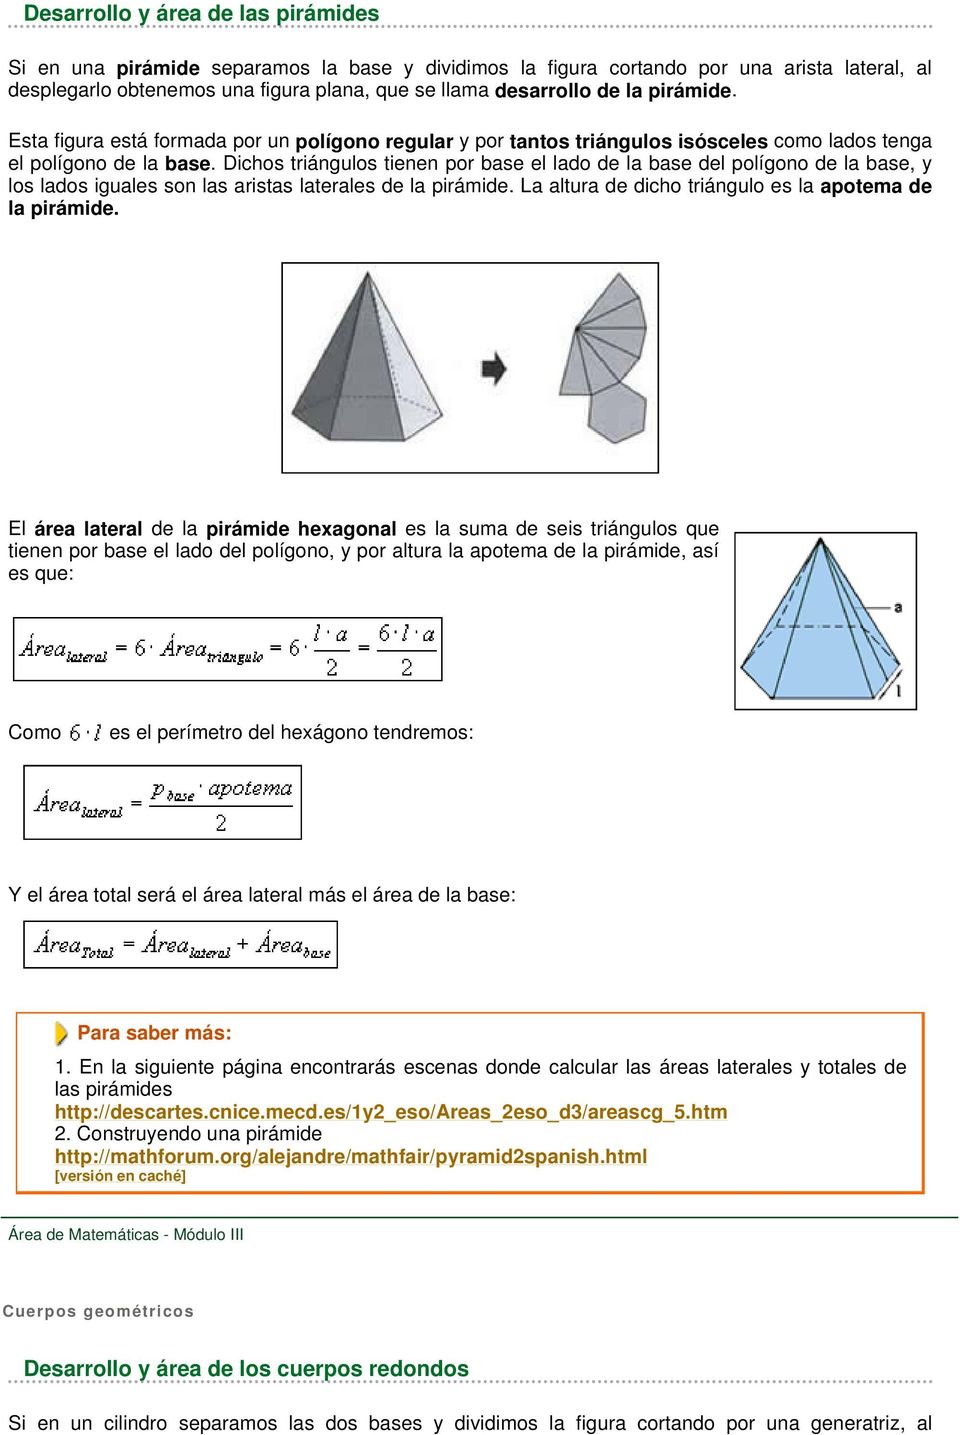 Dichos triángulos tienen por base el lado de la base del polígono de la base, y los lados iguales son las aristas laterales de la pirámide. La altura de dicho triángulo es la apotema de la pirámide.